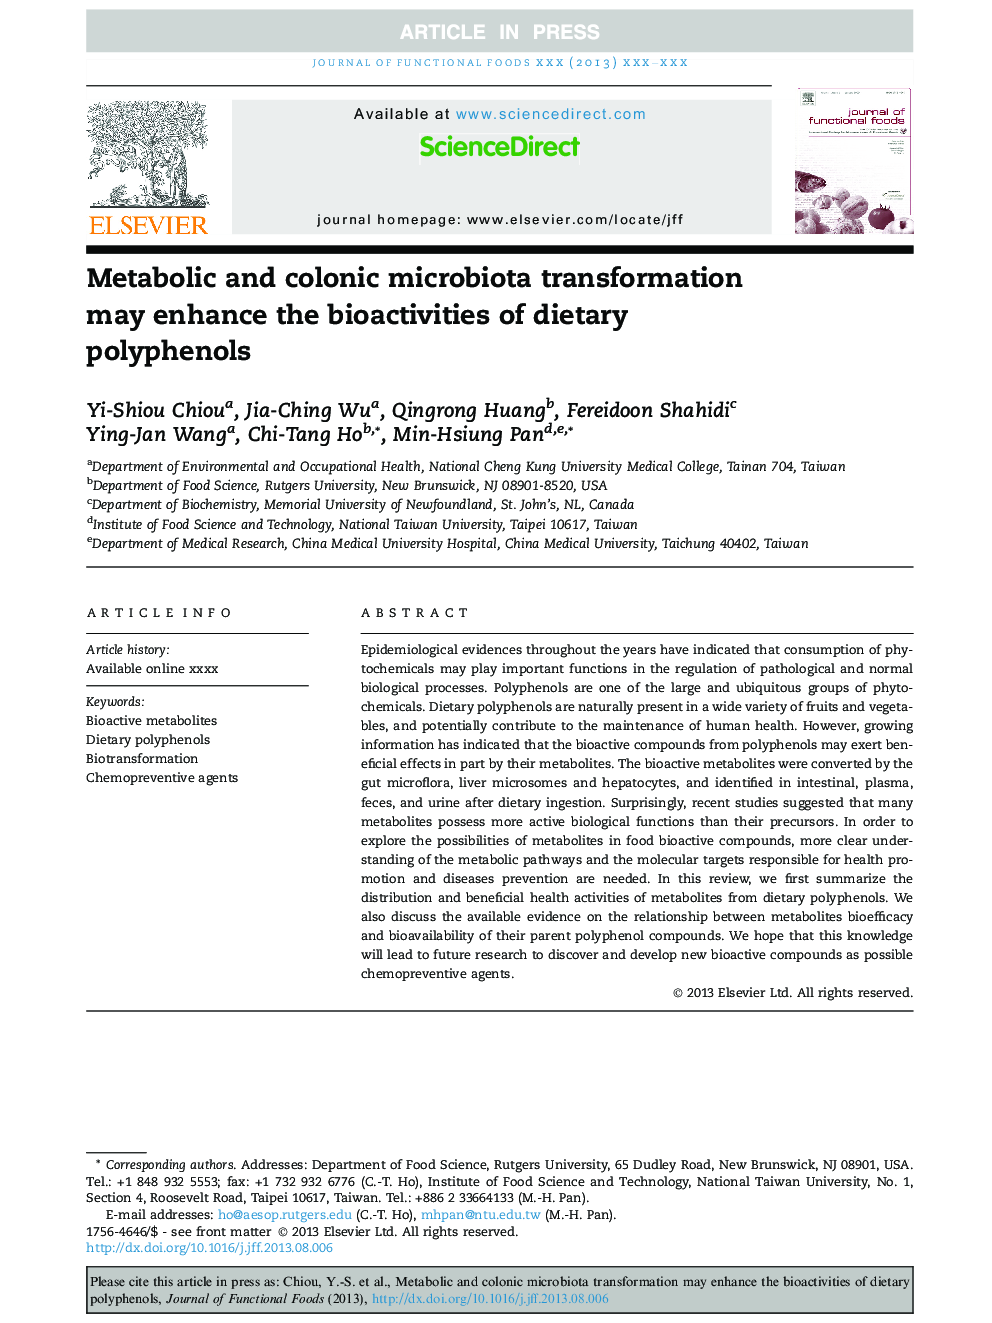 تحولات میکروبیولوژیک متابولیک و کولون ممکن است فعالیت بیولوژیکی پلی فنلهای رژیم را افزایش دهد 